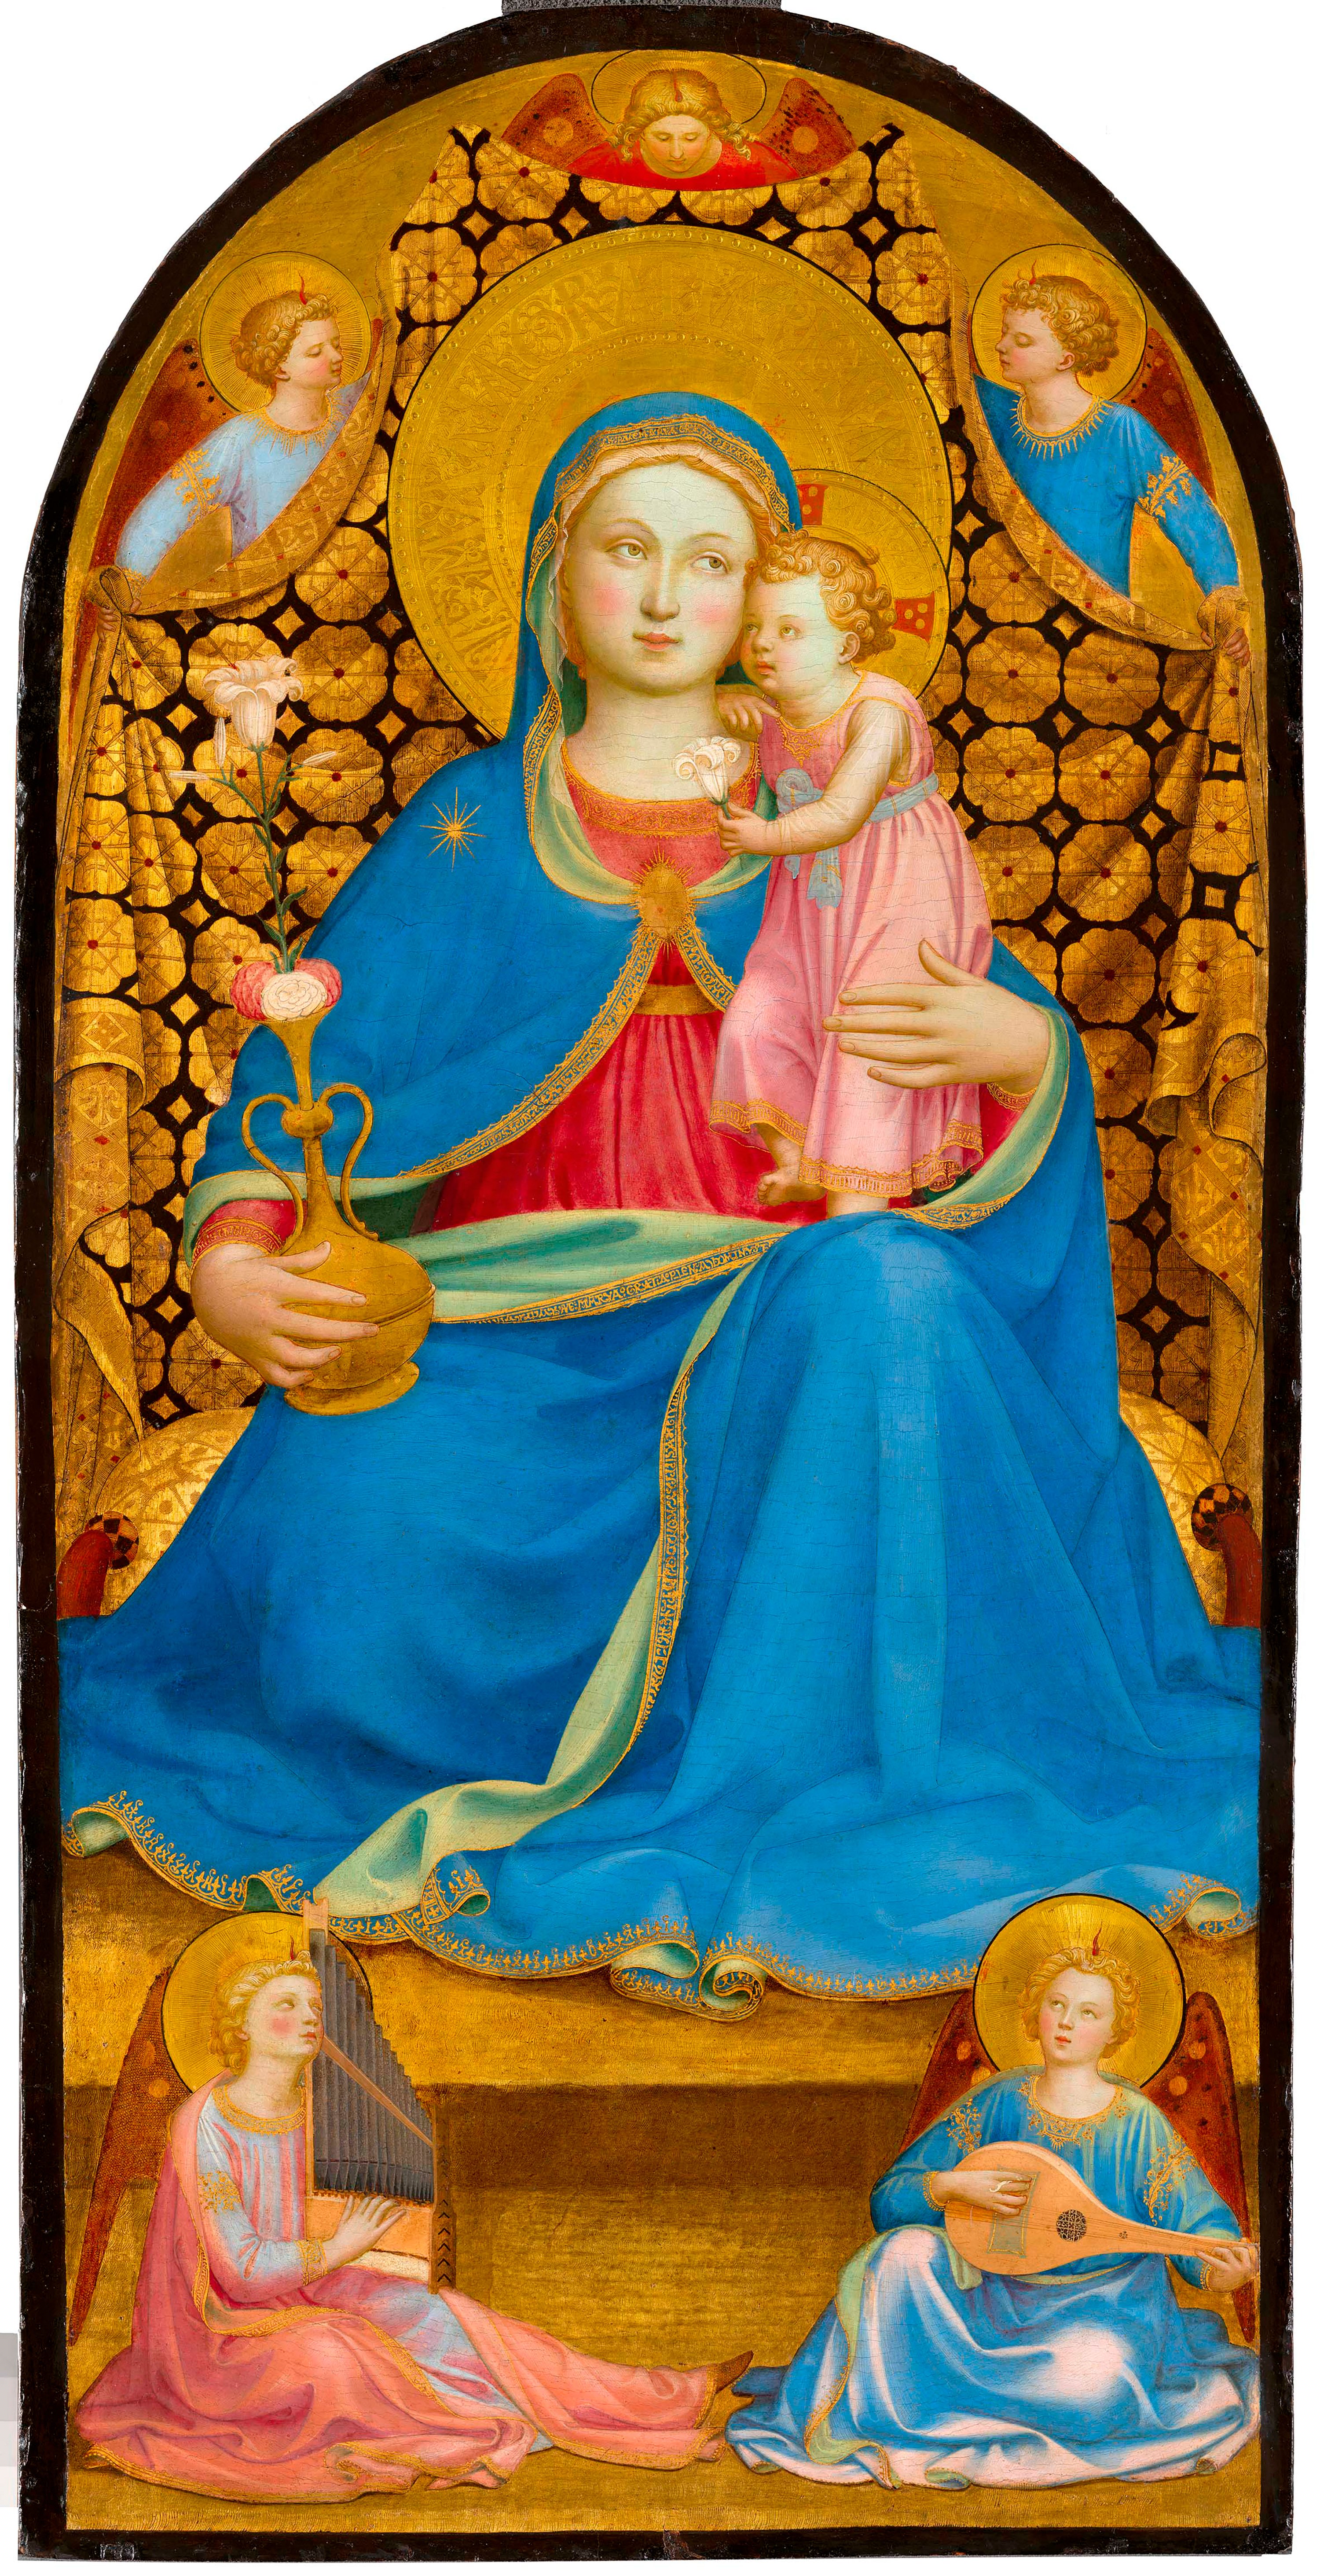 La Virgen de la Humildad. Fra Angelico (Fra Giovanni da Fiesole)